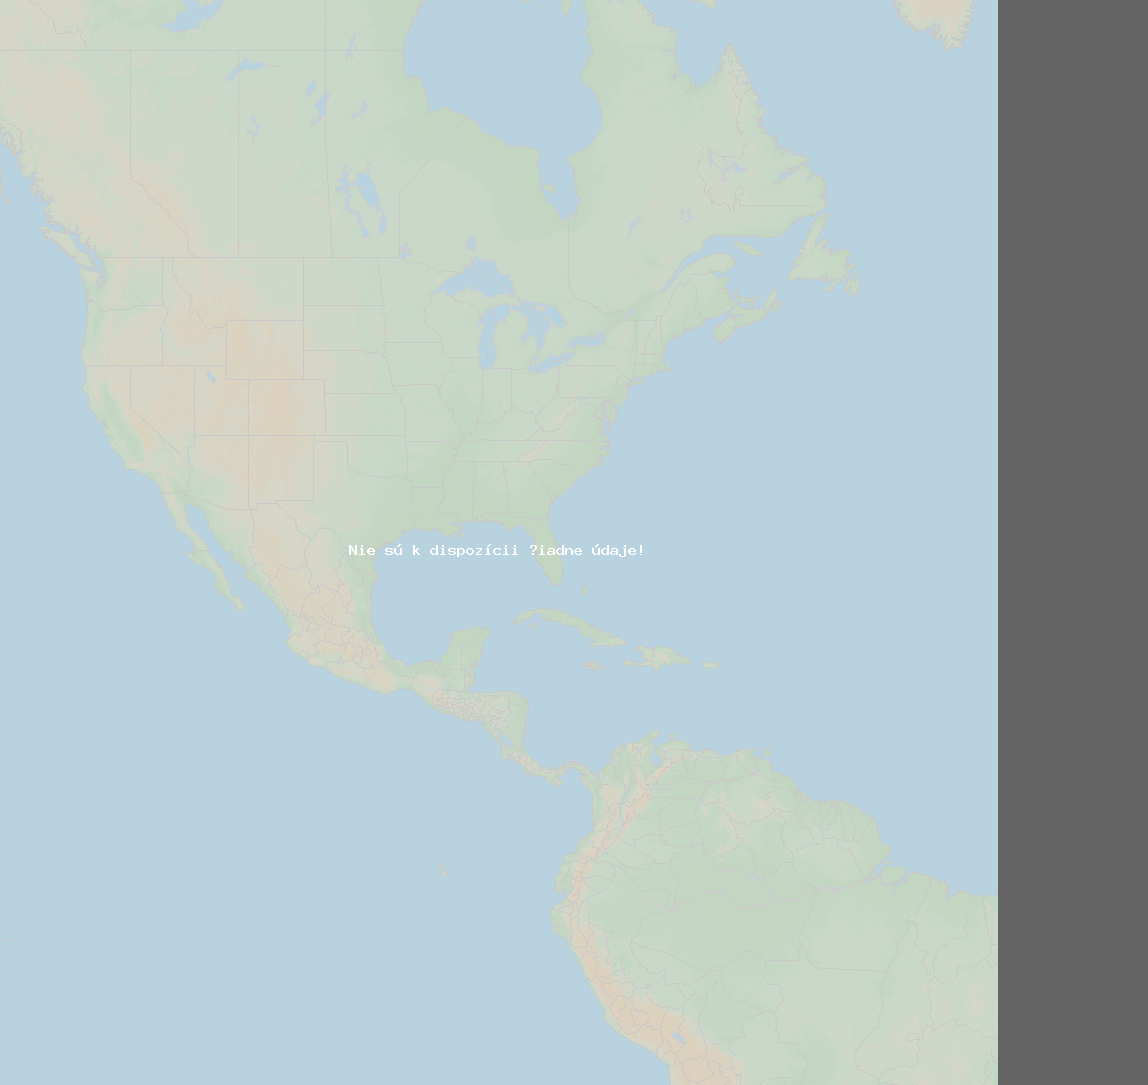 Pomer bleskov (Stanica Baie-Comeau QC) North America 2019 Apríl